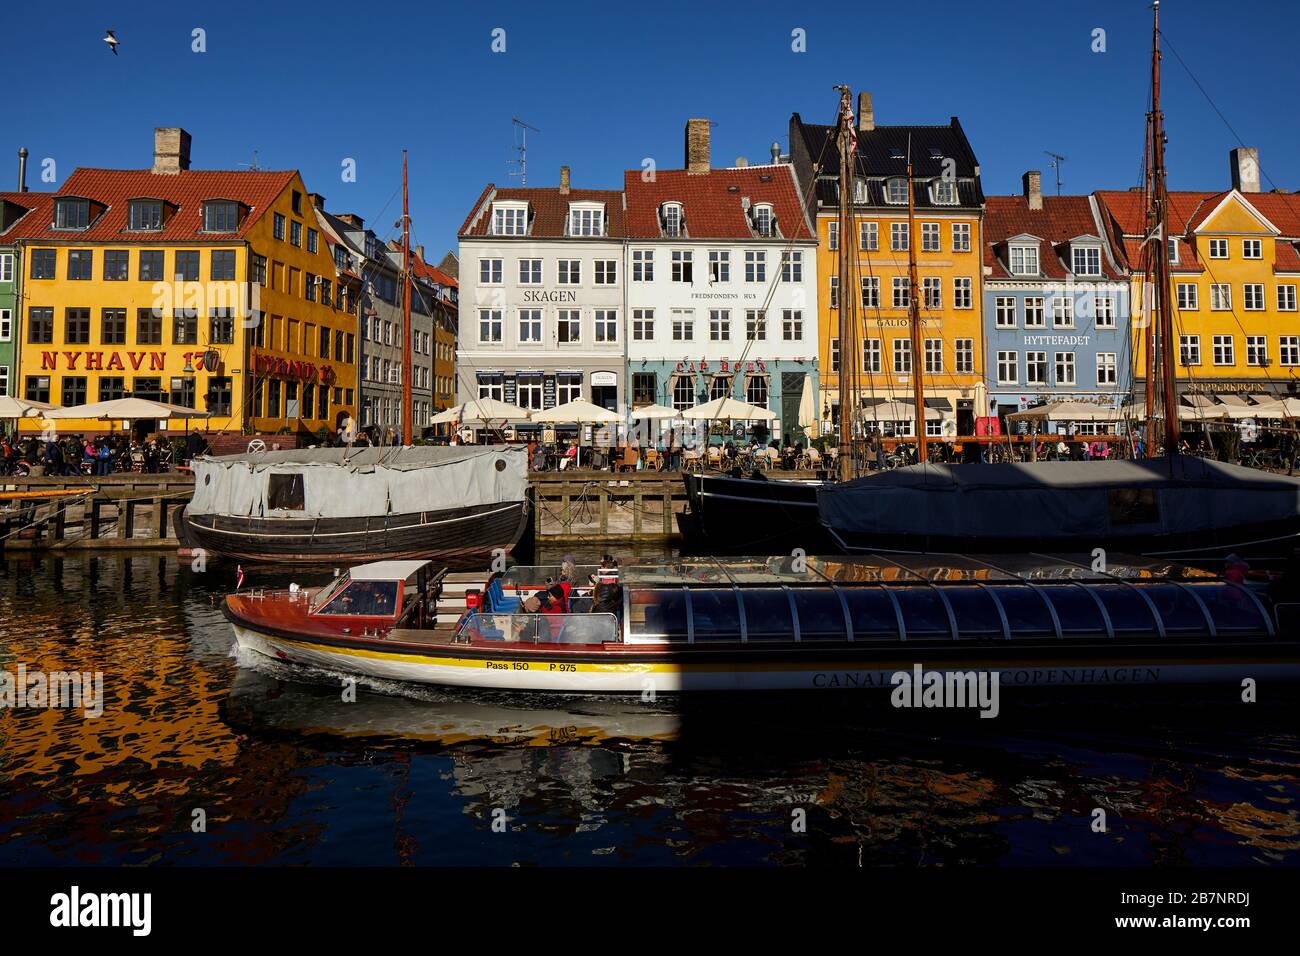 Copenhague, la capitale danoise, le front de mer historique de Nyhavn, le canal et le quartier des divertissements bordés de maisons de ville aux couleurs vives du XVIIe et du XVIIIe siècle Banque D'Images